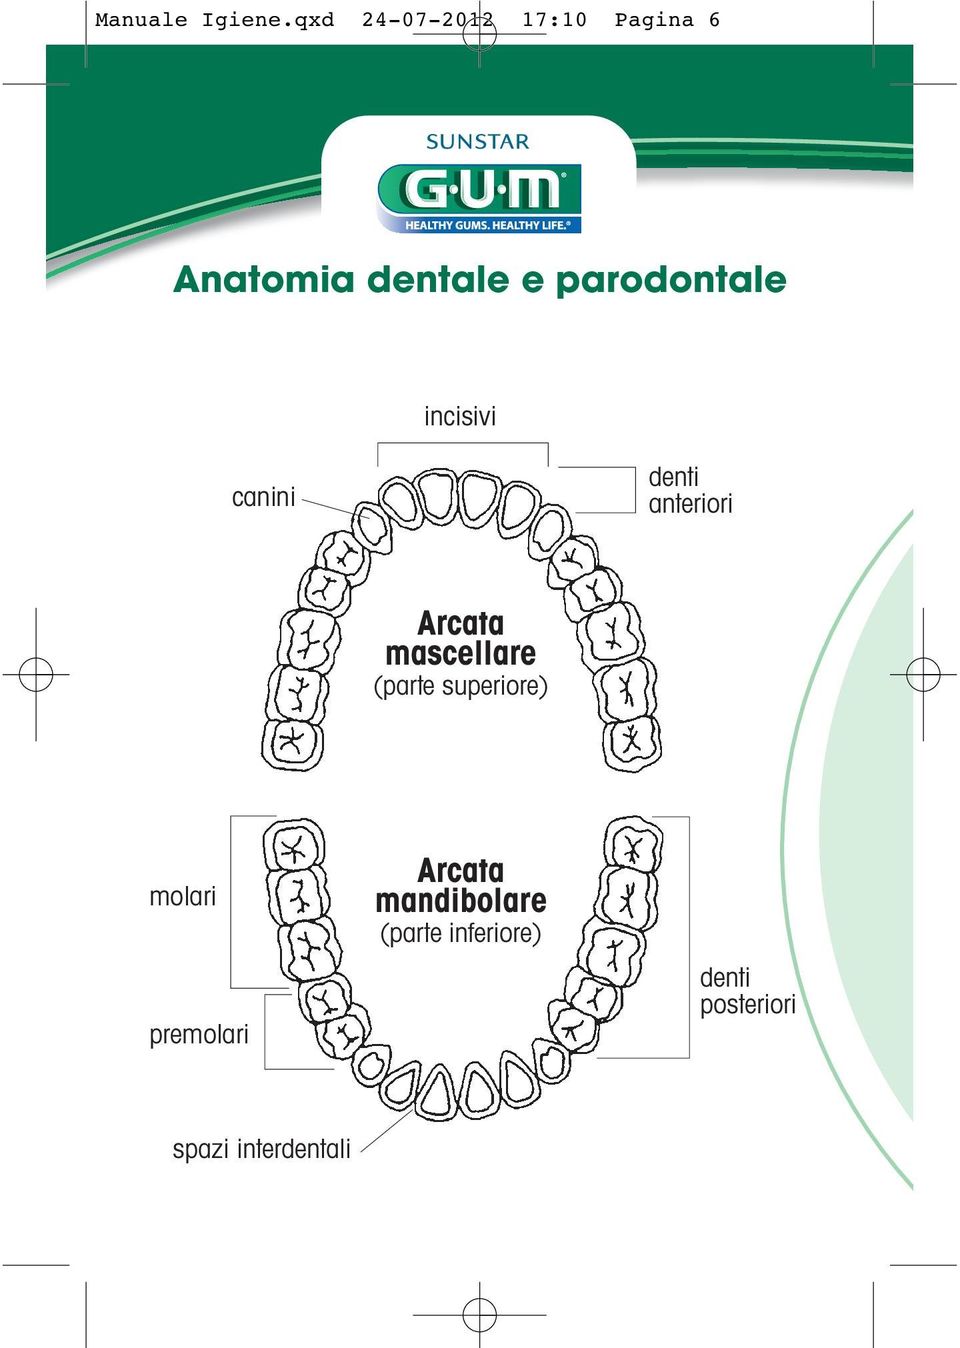 parodontale incisivi canini denti anteriori Arcata